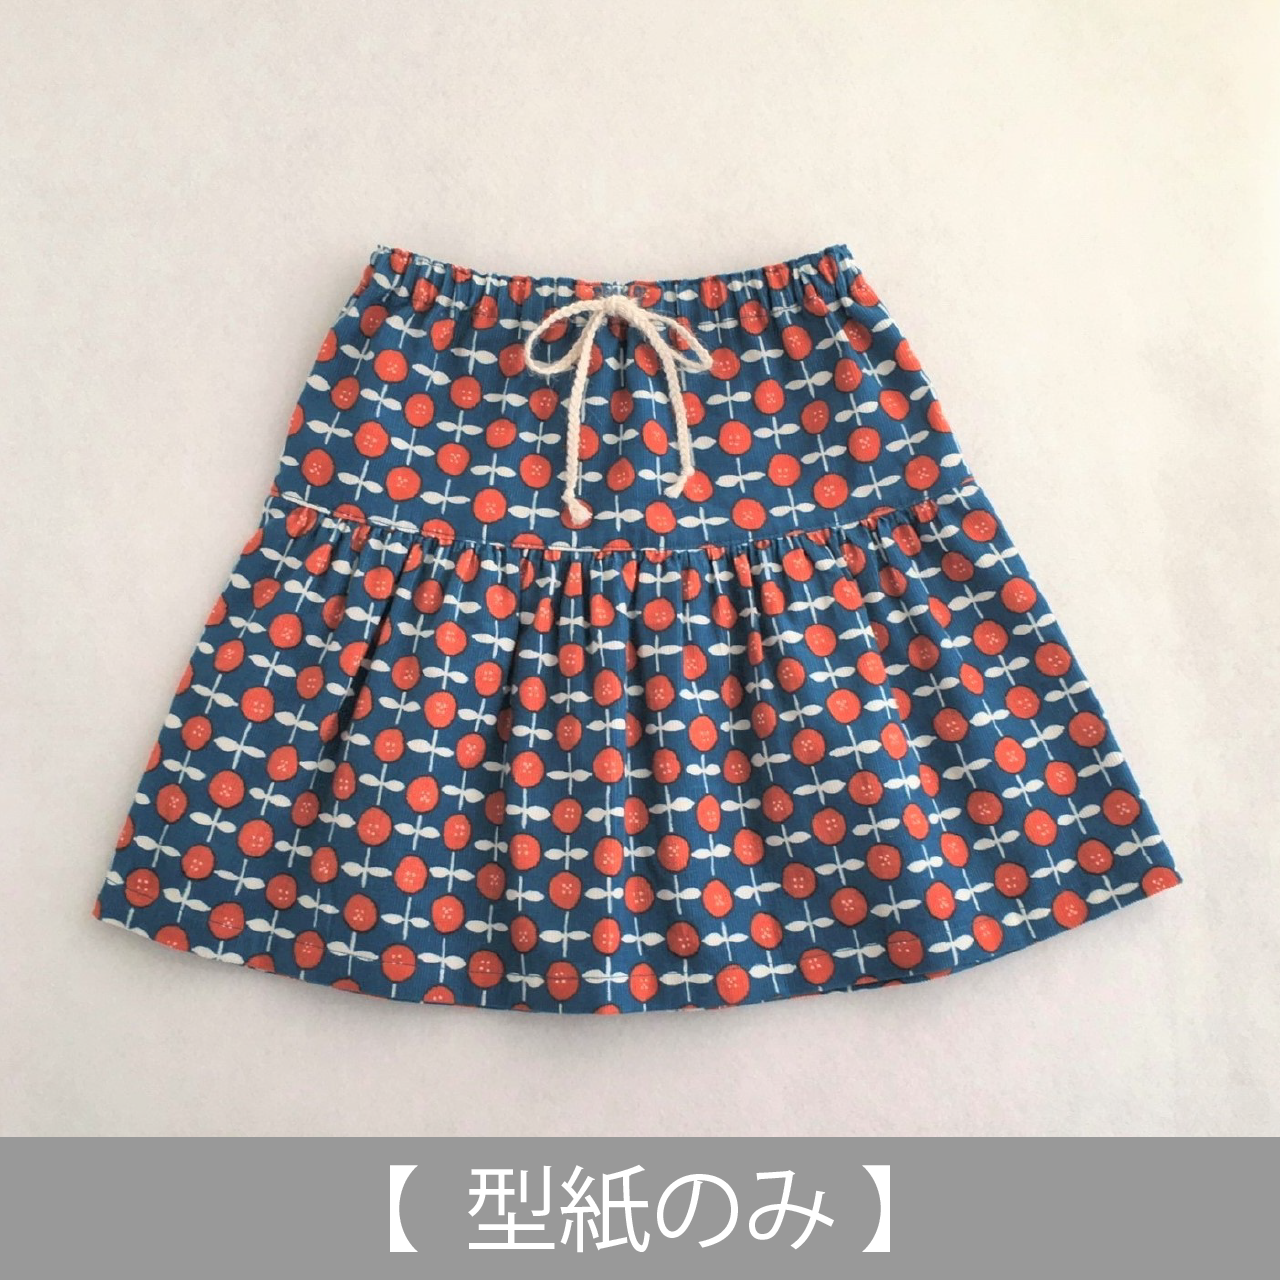 ティアードスカート 70 130サイズ 型紙のみ Bo 1925 子供服の型紙ショップ Tsukuro ツクロ